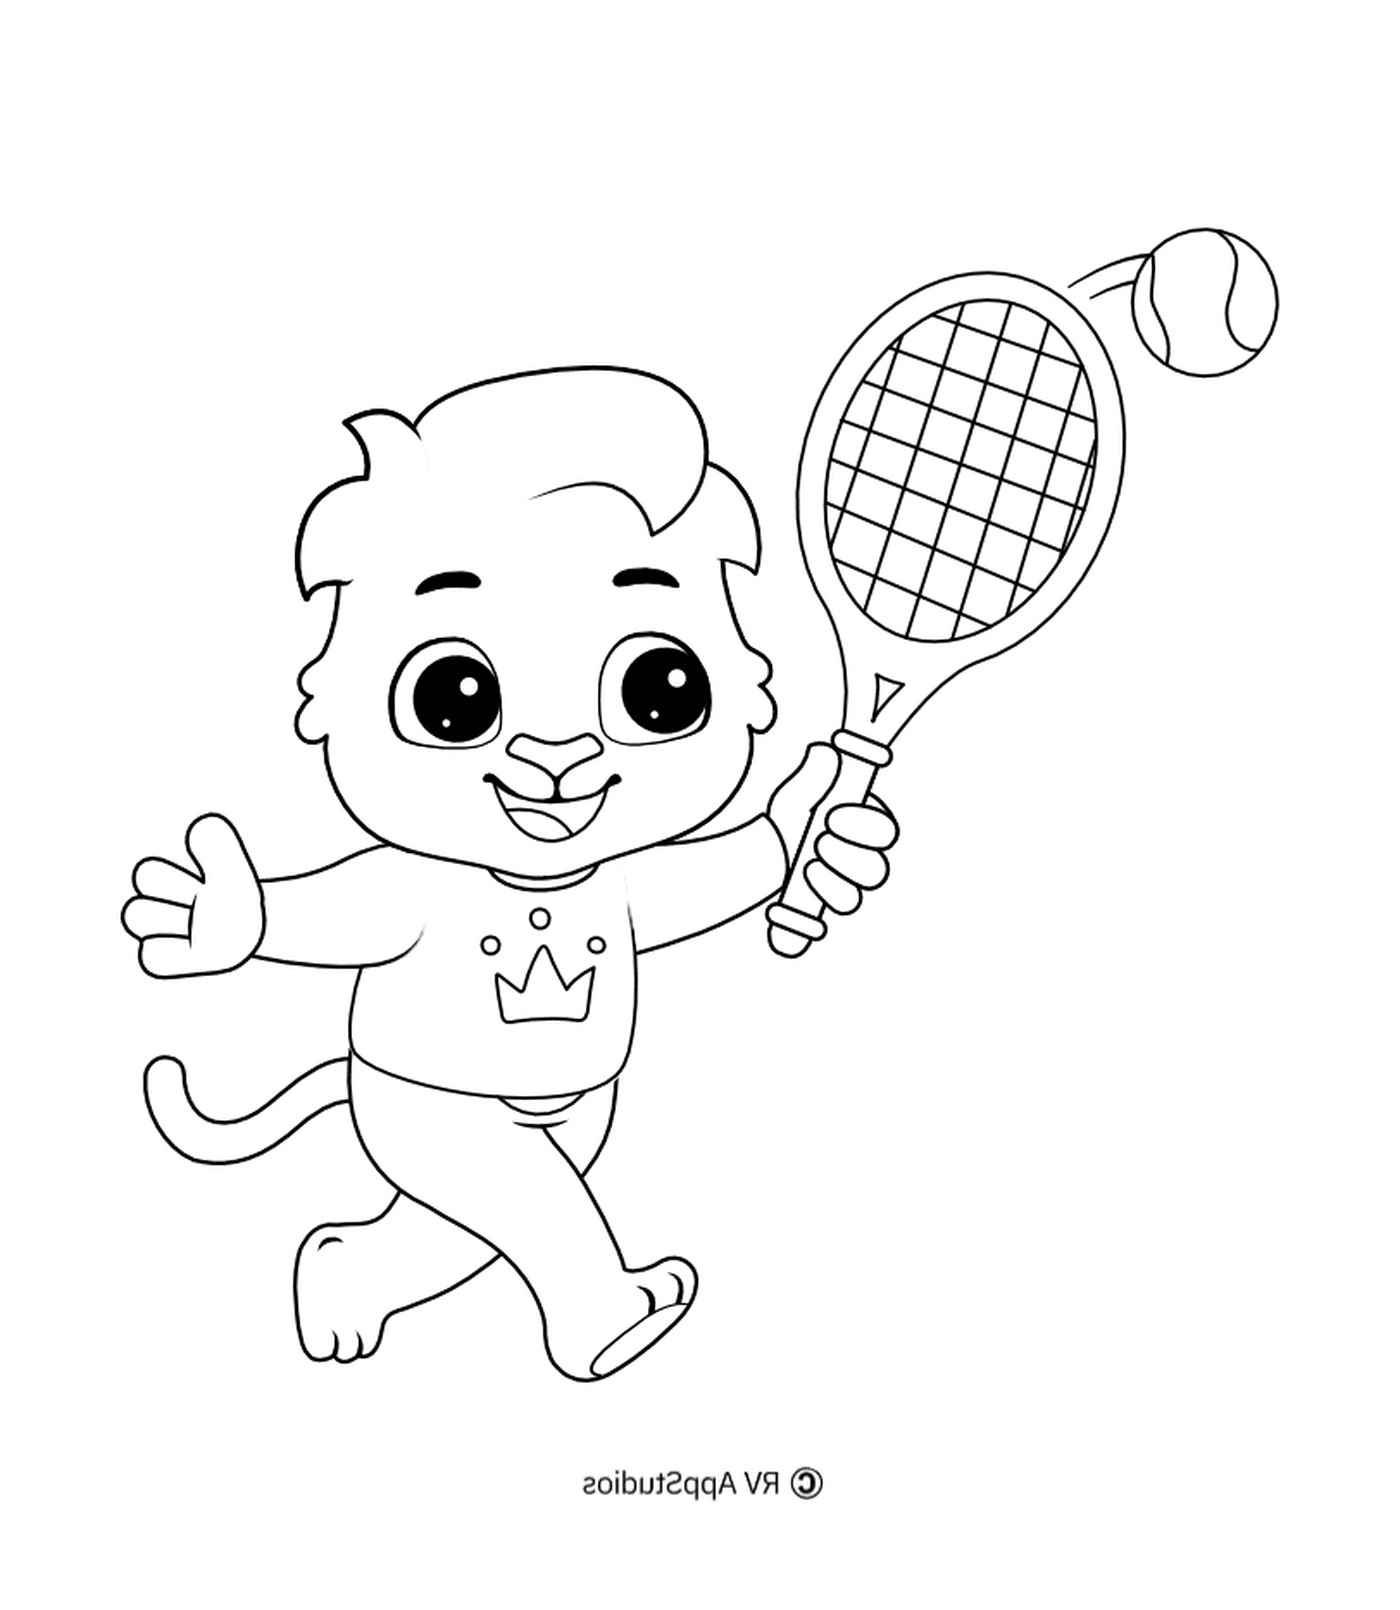   Un enfant joueur de tennis 